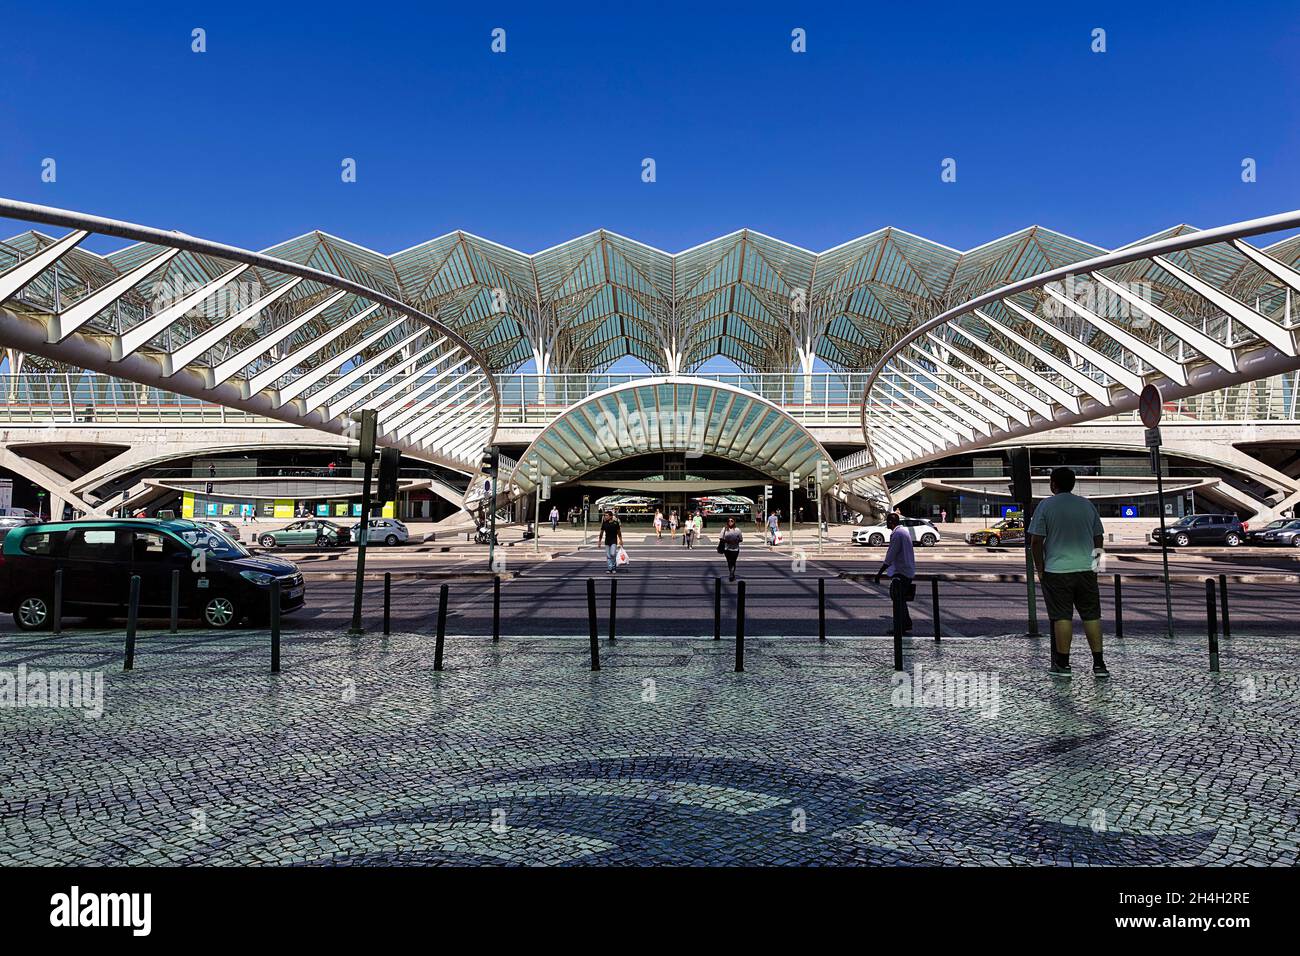 Futuristischer Bahnhof Estacao do Oriente, Gare do Oriente, Architekt Santiago Calatrava, moderne Architektur, Lissabon, Portugal Stockfoto